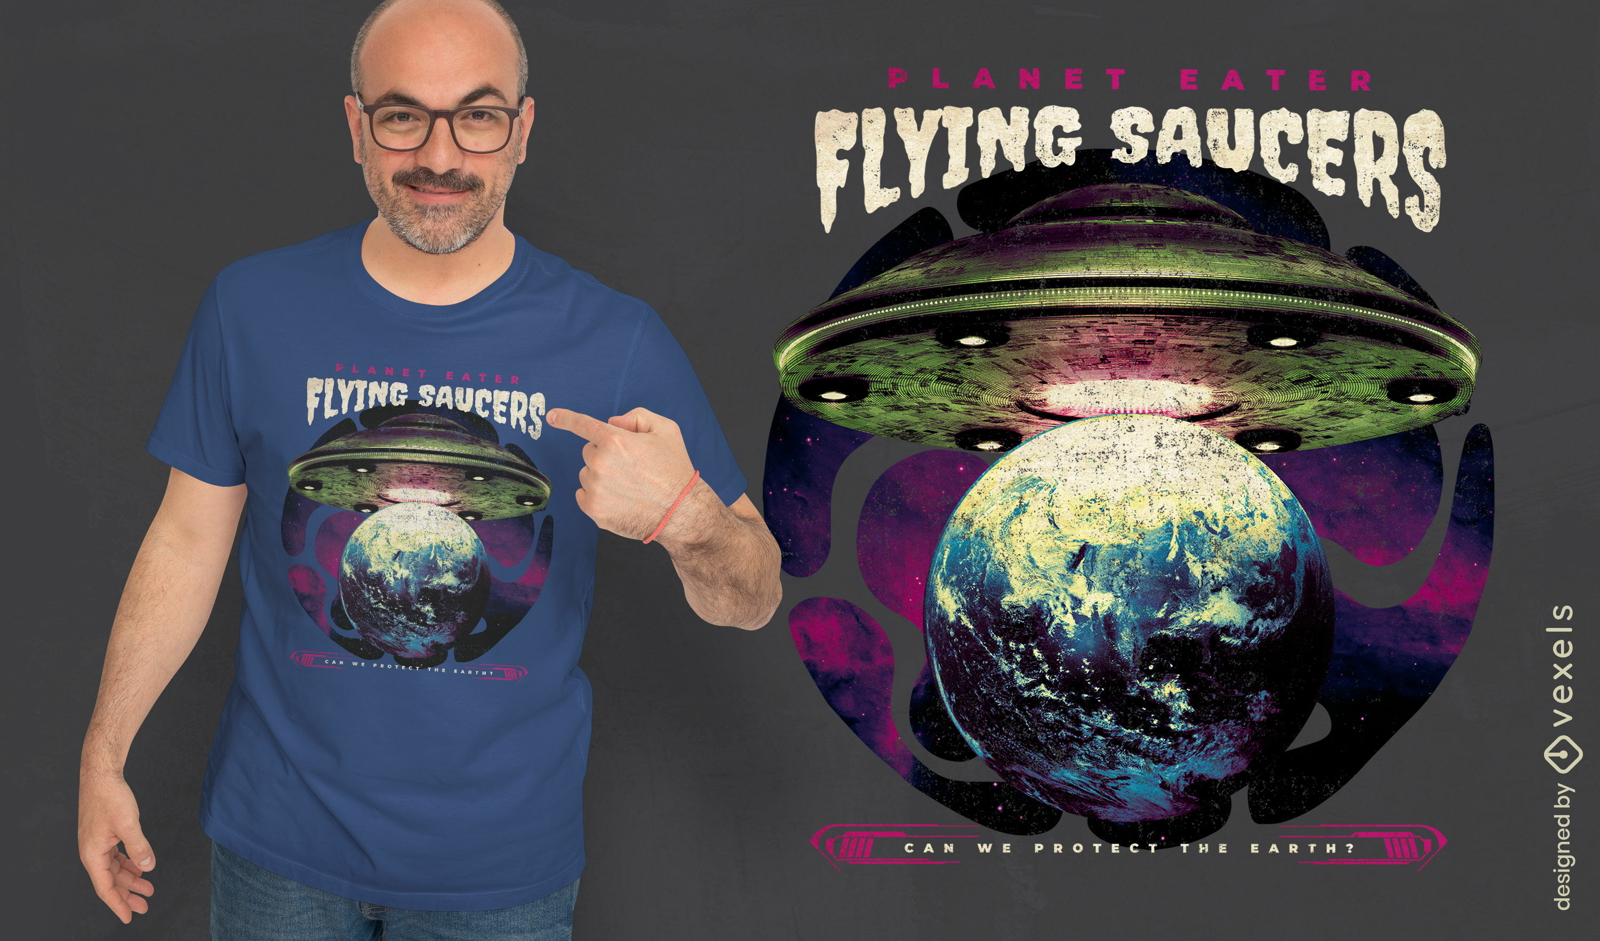 Dise?o de camiseta de nave espacial alien?gena en la Tierra